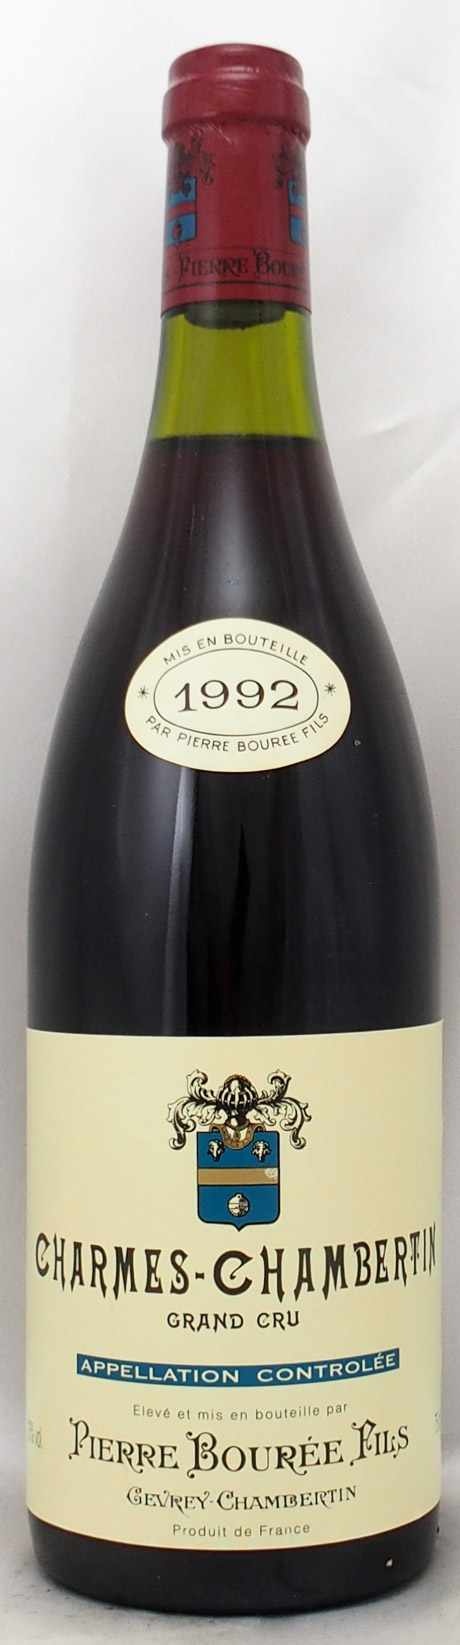 公認ストア シャルム・シャンベルタン 1992年 ピエール・ブレ ワイン